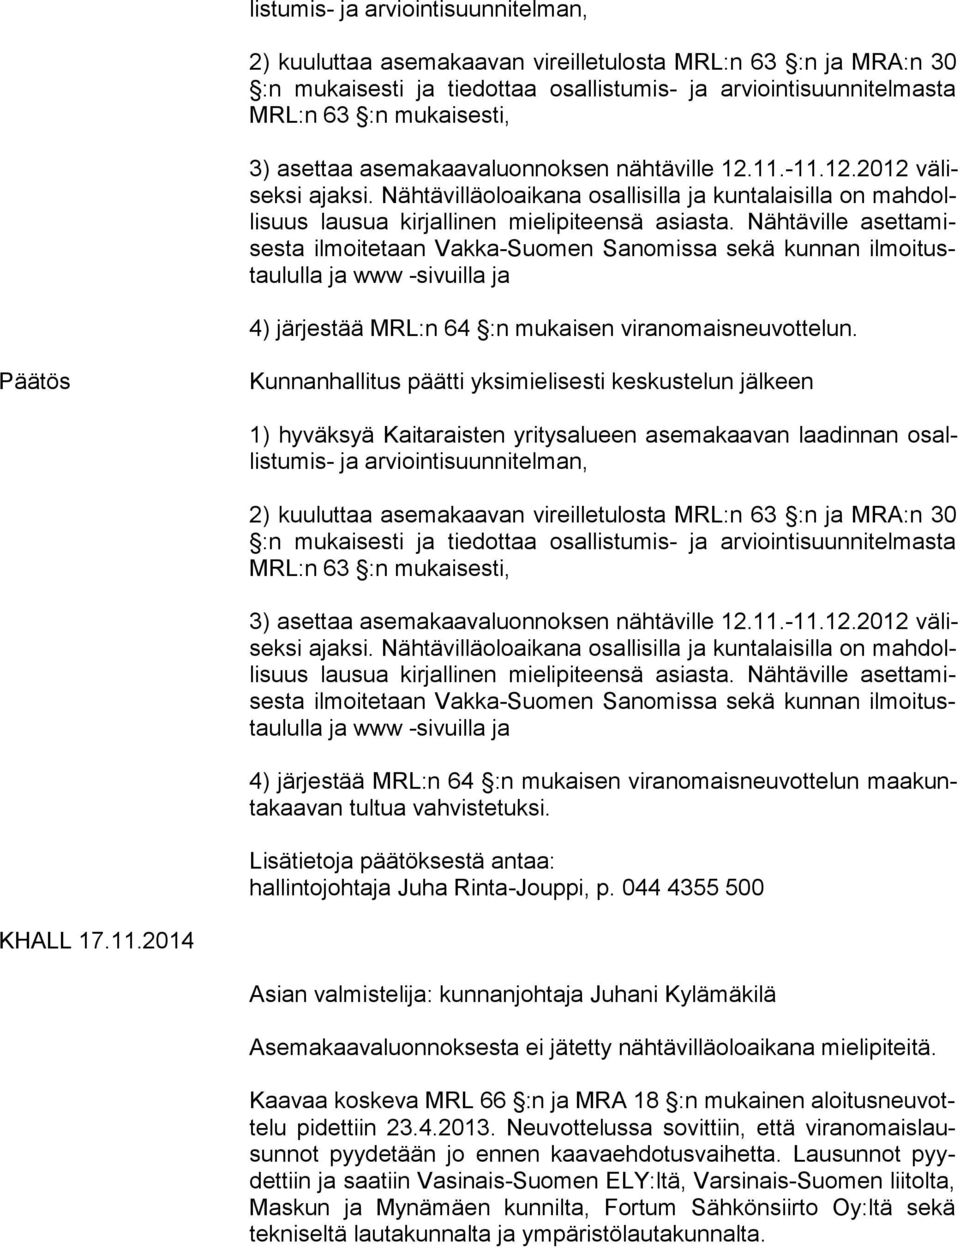 Nähtäville aset ta mises ta ilmoitetaan Vakka-Suomen Sanomissa sekä kunnan il moi tustau lul la ja www -sivuilla ja 4) järjestää MRL:n 64 :n mukaisen viranomaisneuvottelun.